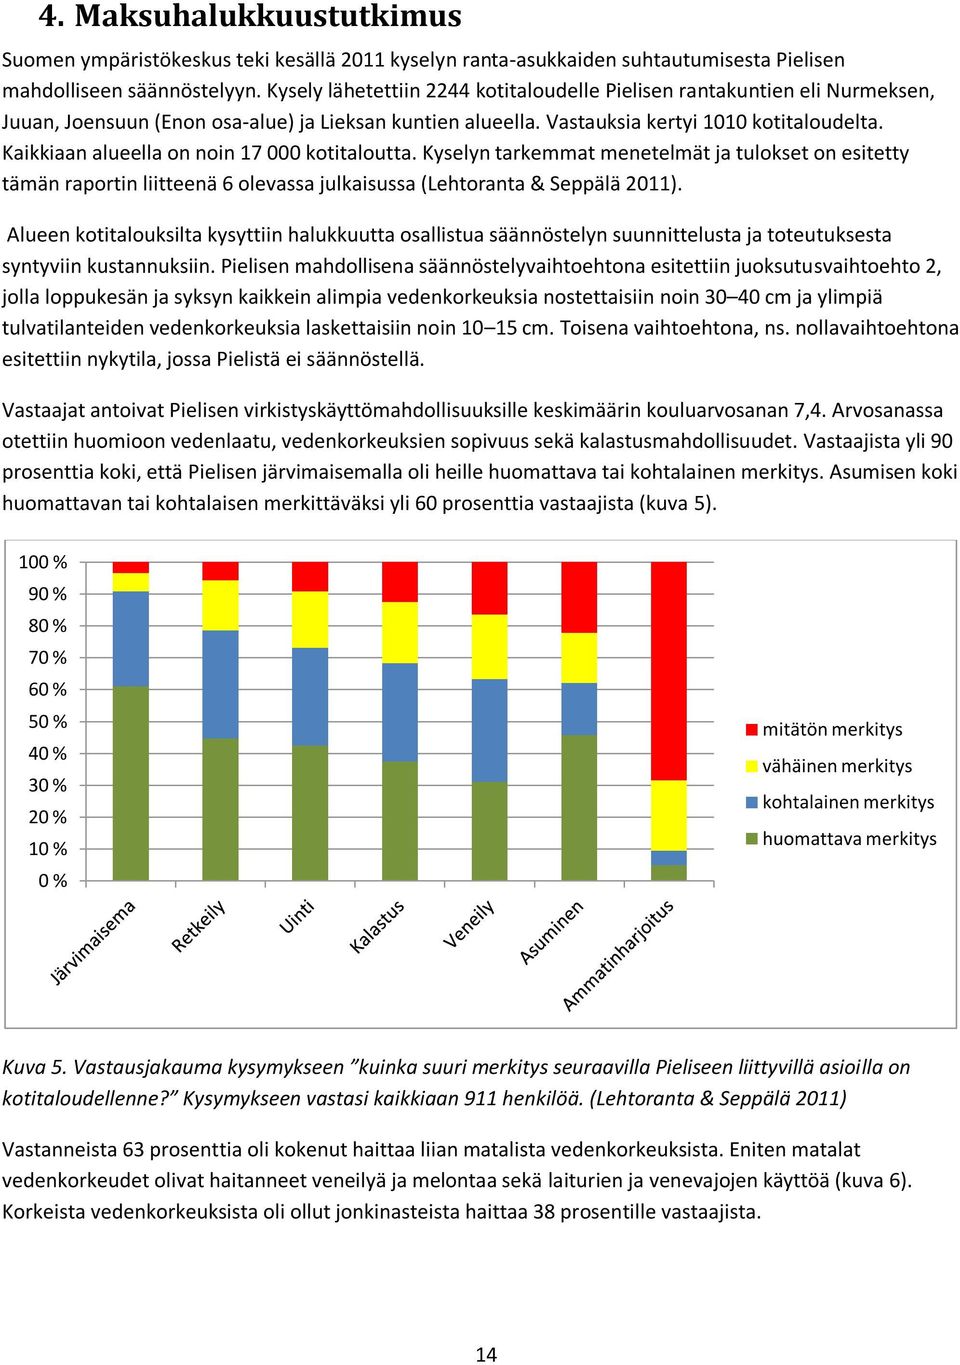 Kaikkiaan alueella on noin 17 000 kotitaloutta. Kyselyn tarkemmat menetelmät ja tulokset on esitetty tämän raportin liitteenä 6 olevassa julkaisussa (Lehtoranta & Seppälä 2011).